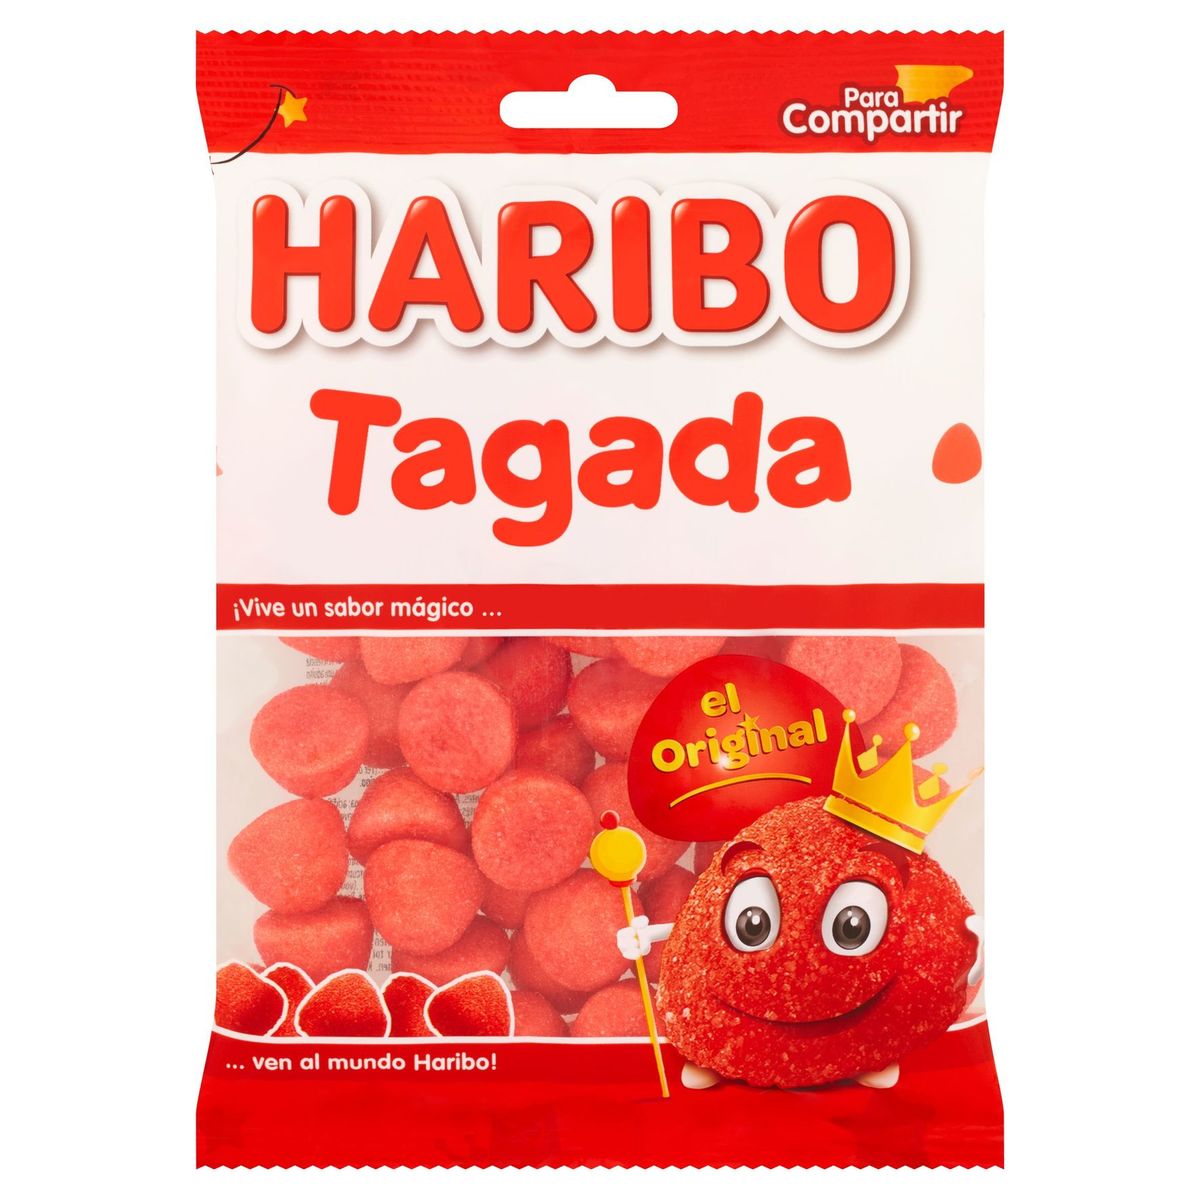 Haribo Tagada 200 g